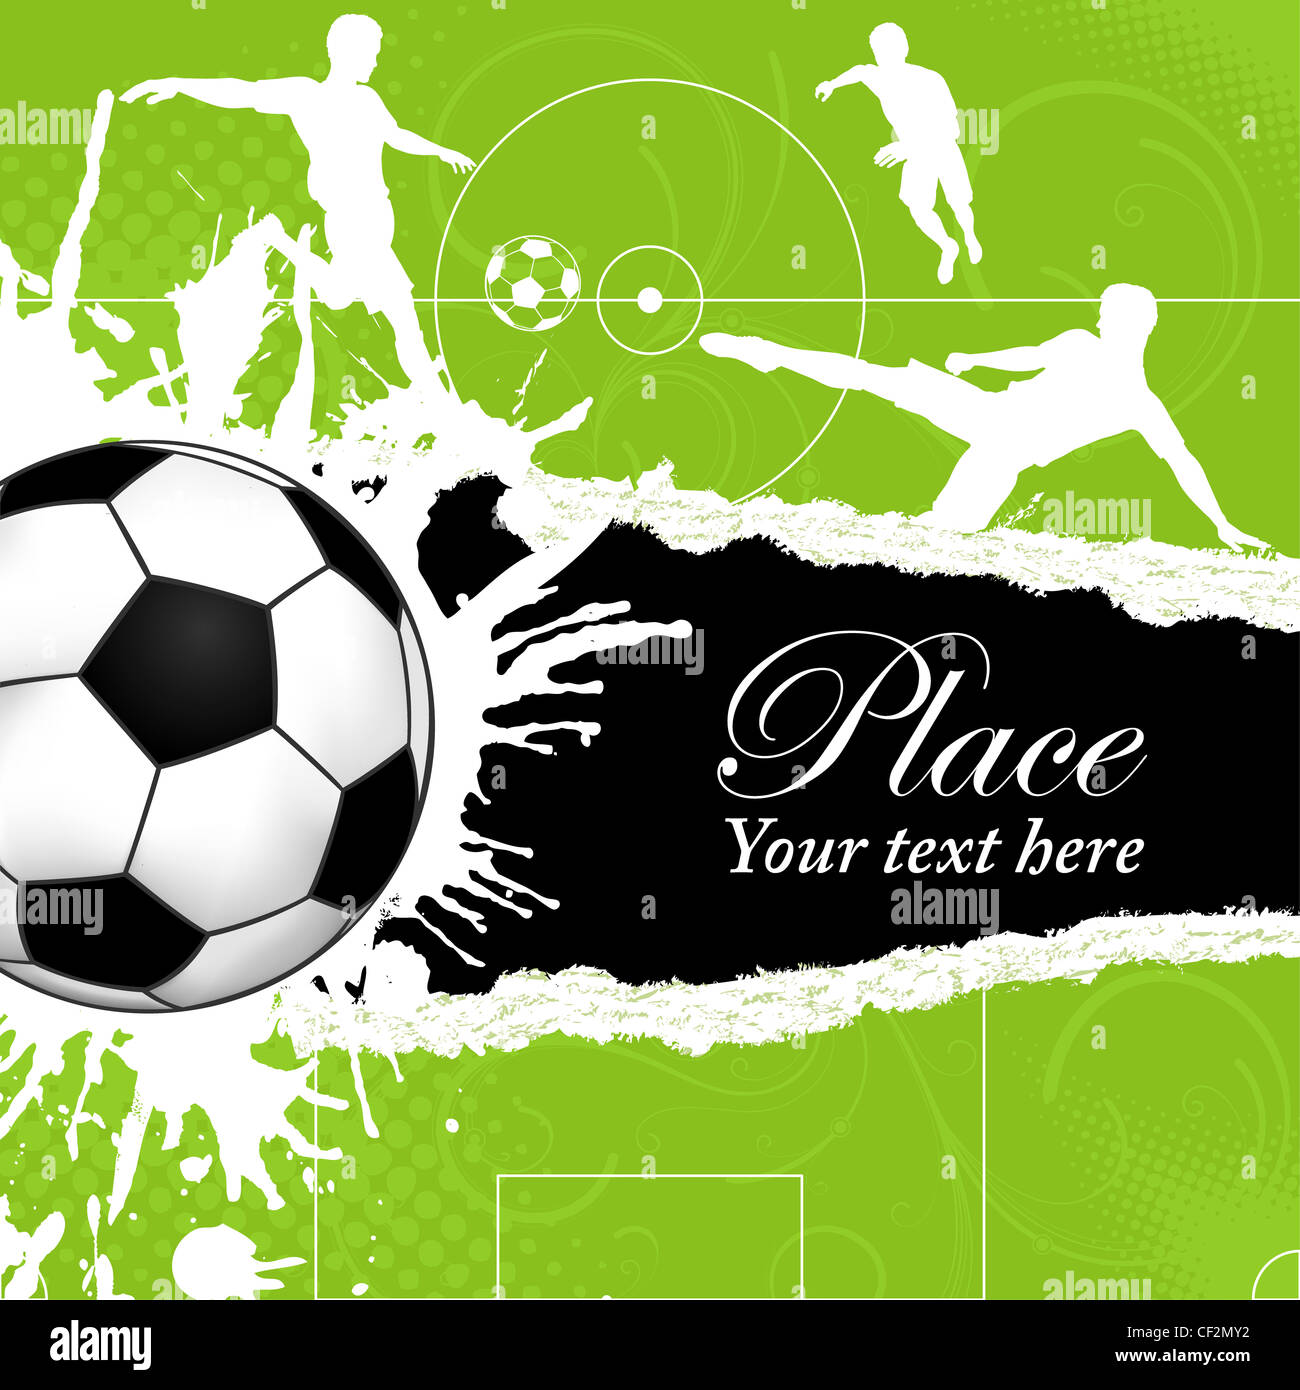 Fussball Auf Grunge Hintergrund Mit Silhouetten Football Spieler Plakat Vorlage Vektor Illustration Stockfotografie Alamy